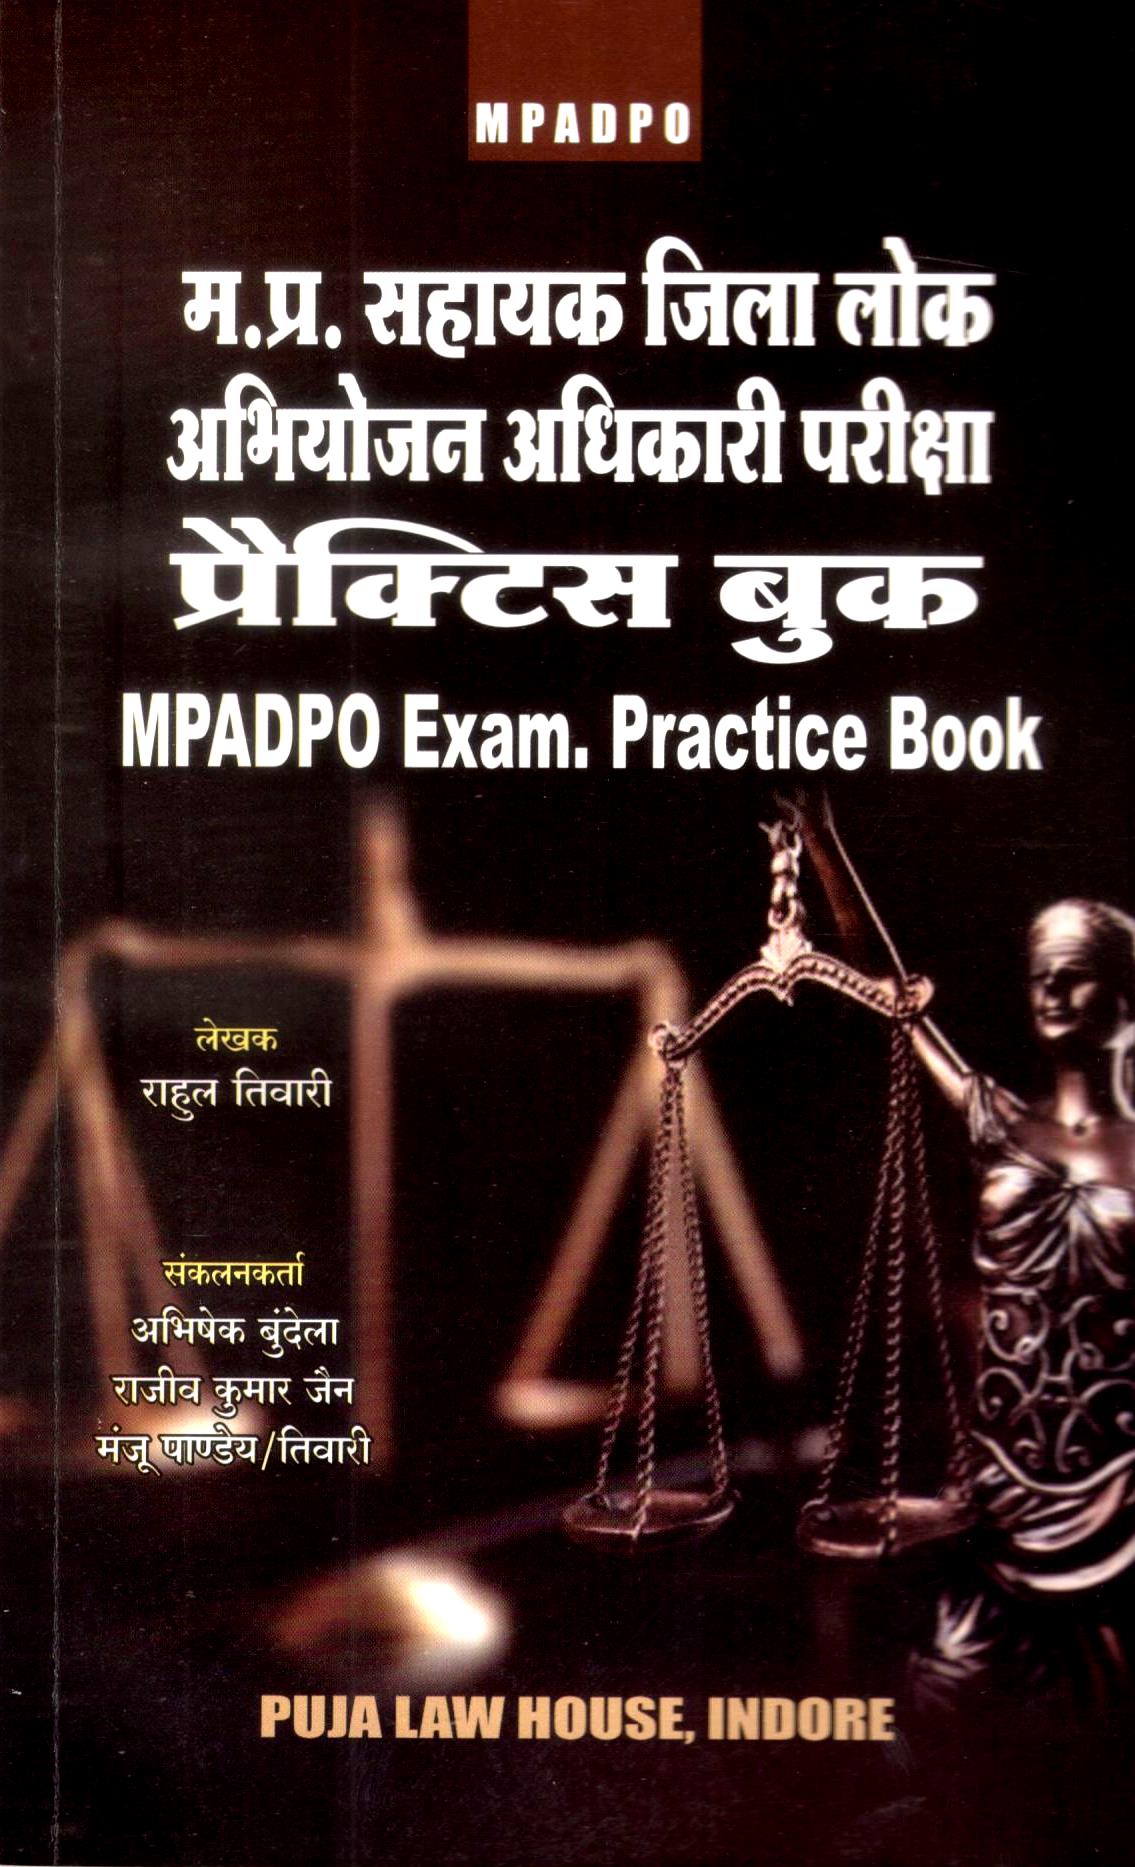  Buy म. प्र. सहायक जिला लोक अभियोजन अधिकारी परीक्षा प्रैक्टिस बुक / M.P.A.D.P.O. Exam Practice Book